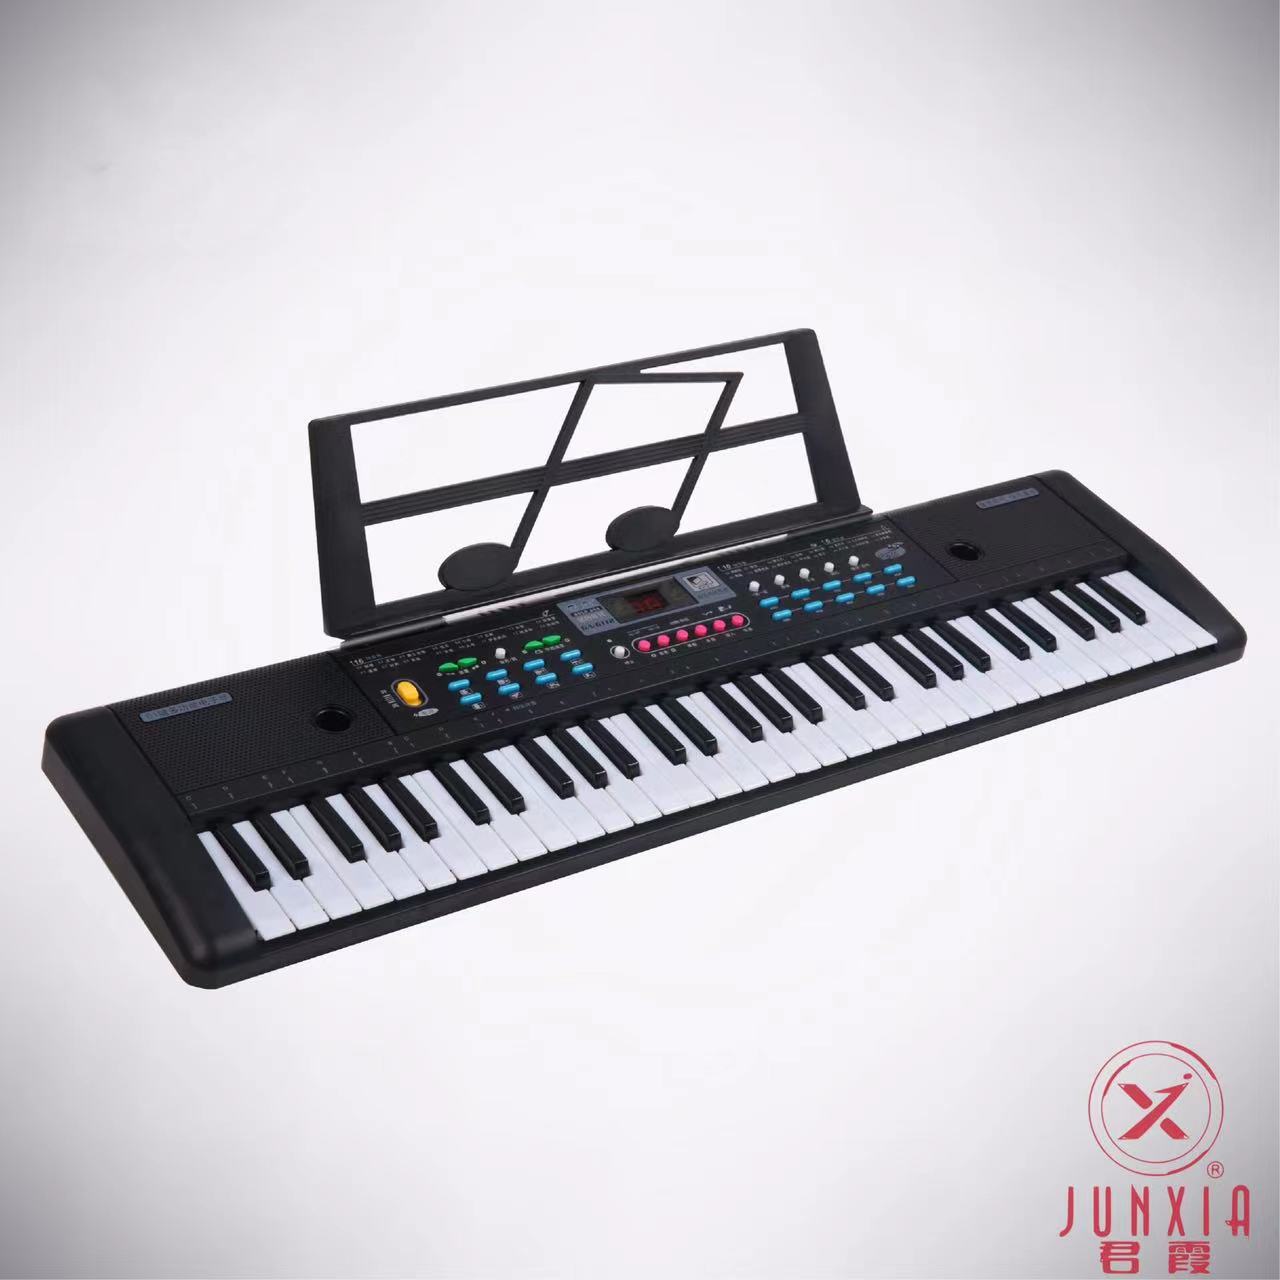 Junxia Chinese Version 61 Key Children's Music Electronic Keyboard Puzzle Little Piano Pattern with Microphone Children's Electronic Keyboard Electronic Keyboard Wholesale